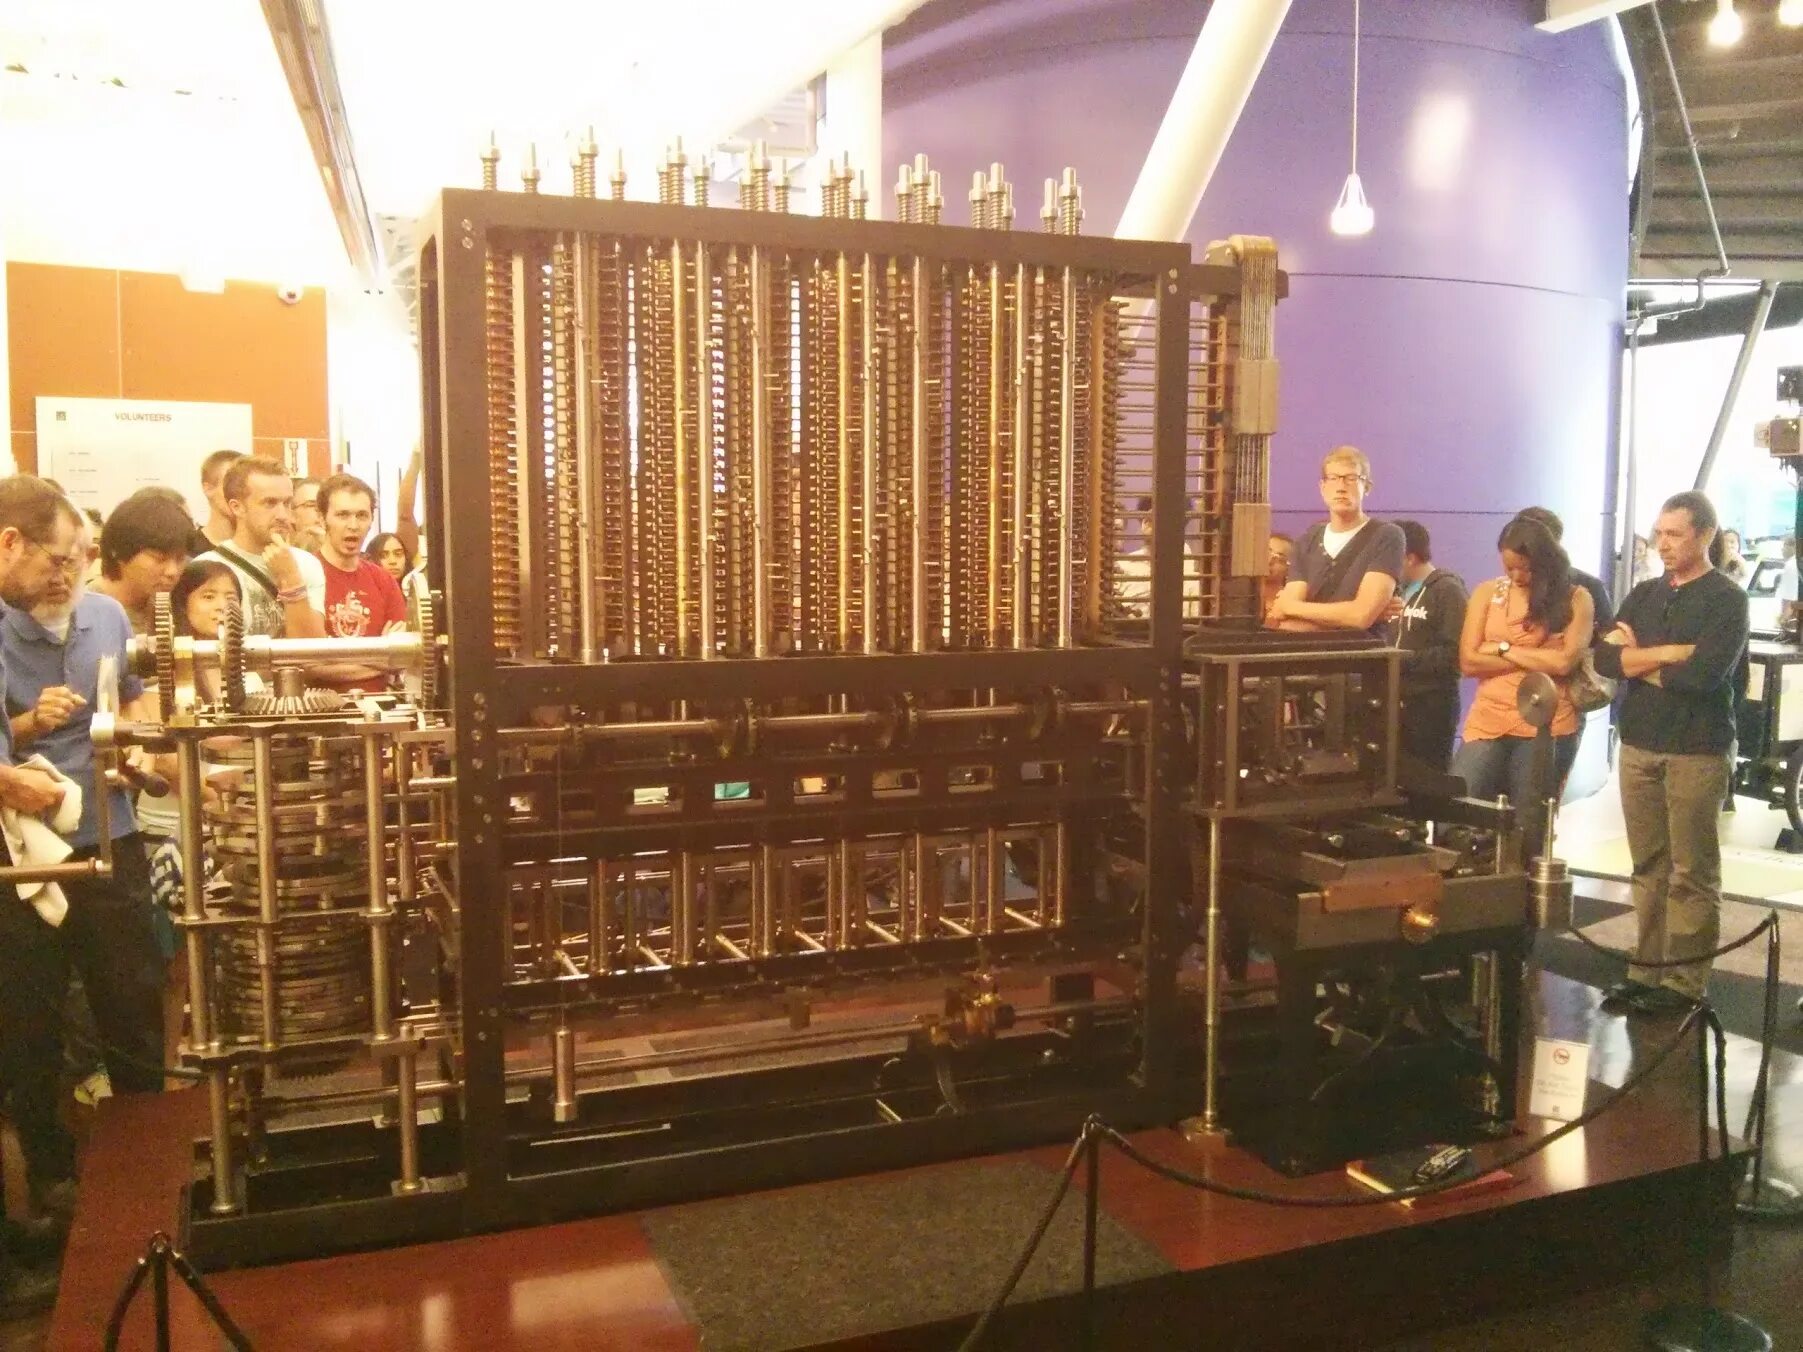 Аналитическая машина чарльза бэббиджа. Ада Лавлейс разностная машина Бэббиджа. Аналитическая машина Чарльза Бэббиджа в музее. Вычислительная машина Чарльза Бэббиджа.